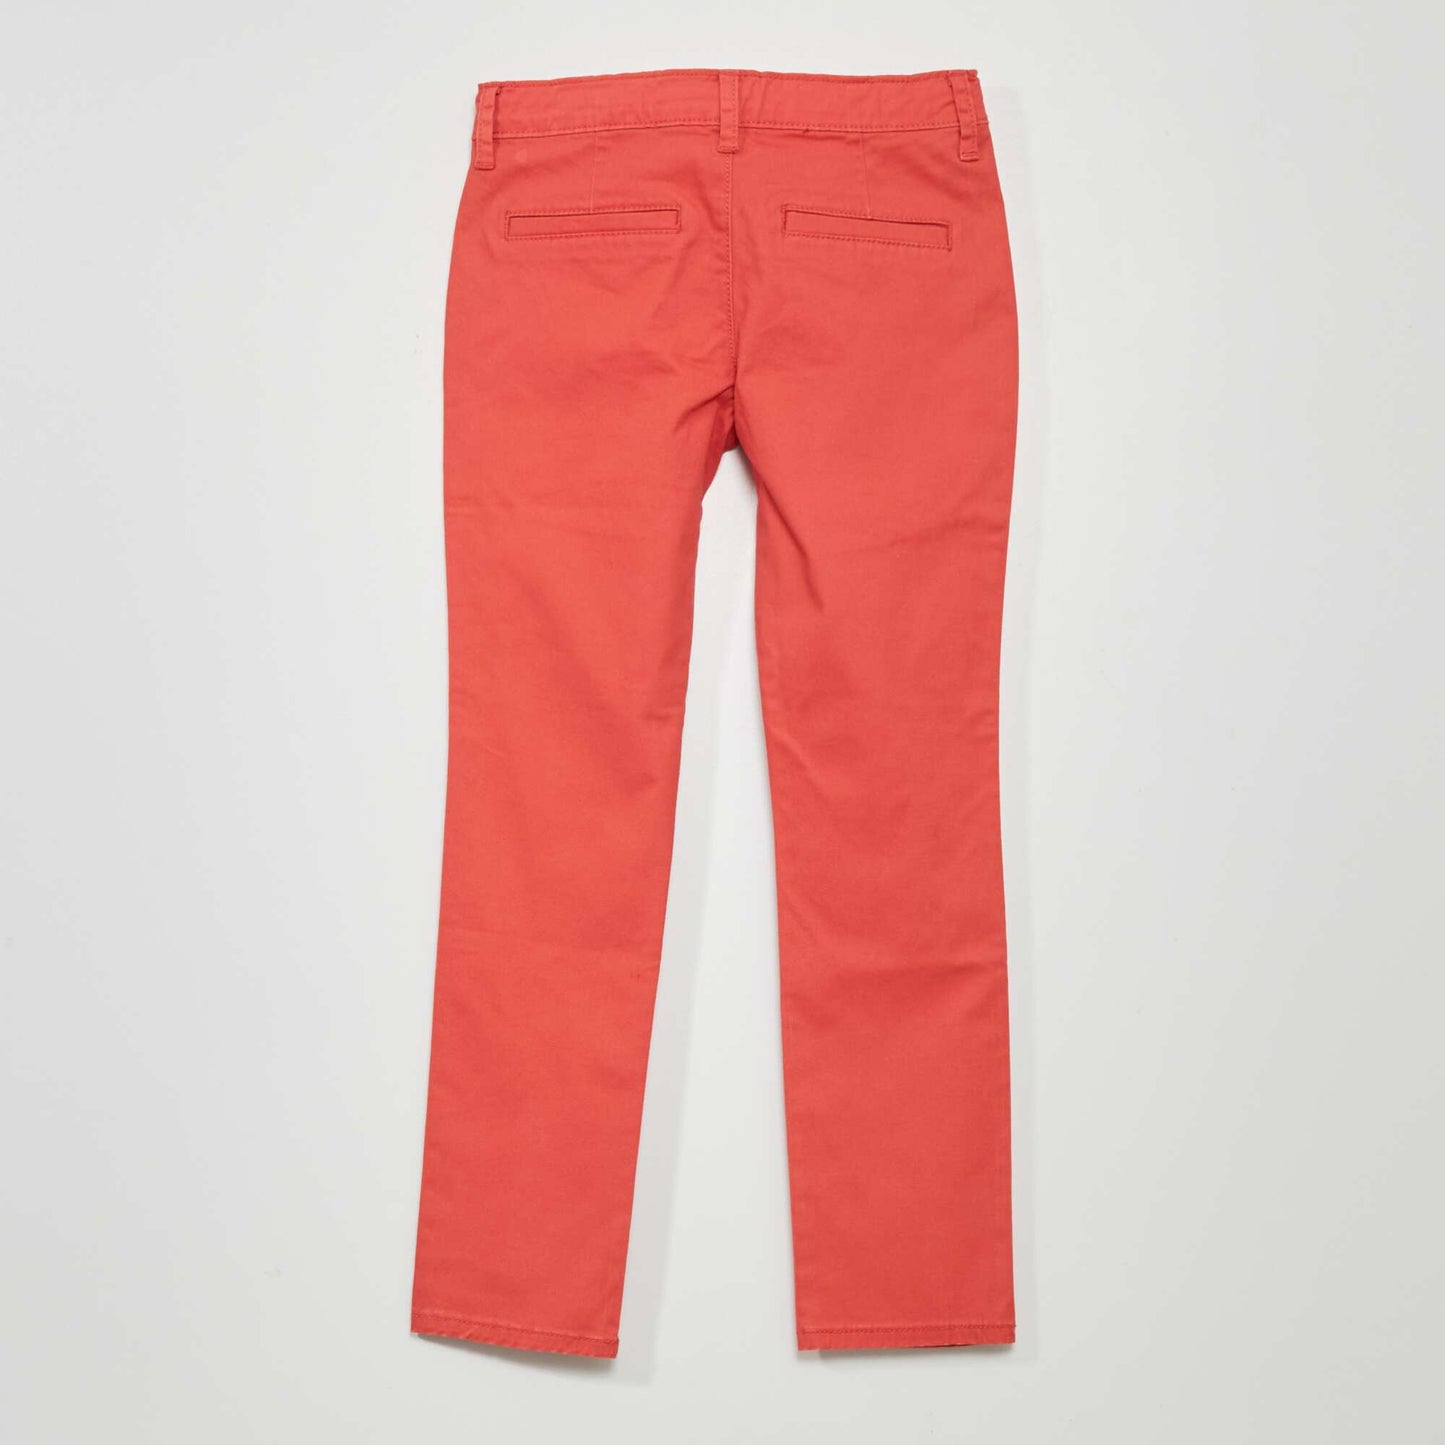 Pantalon chino rouge framboise